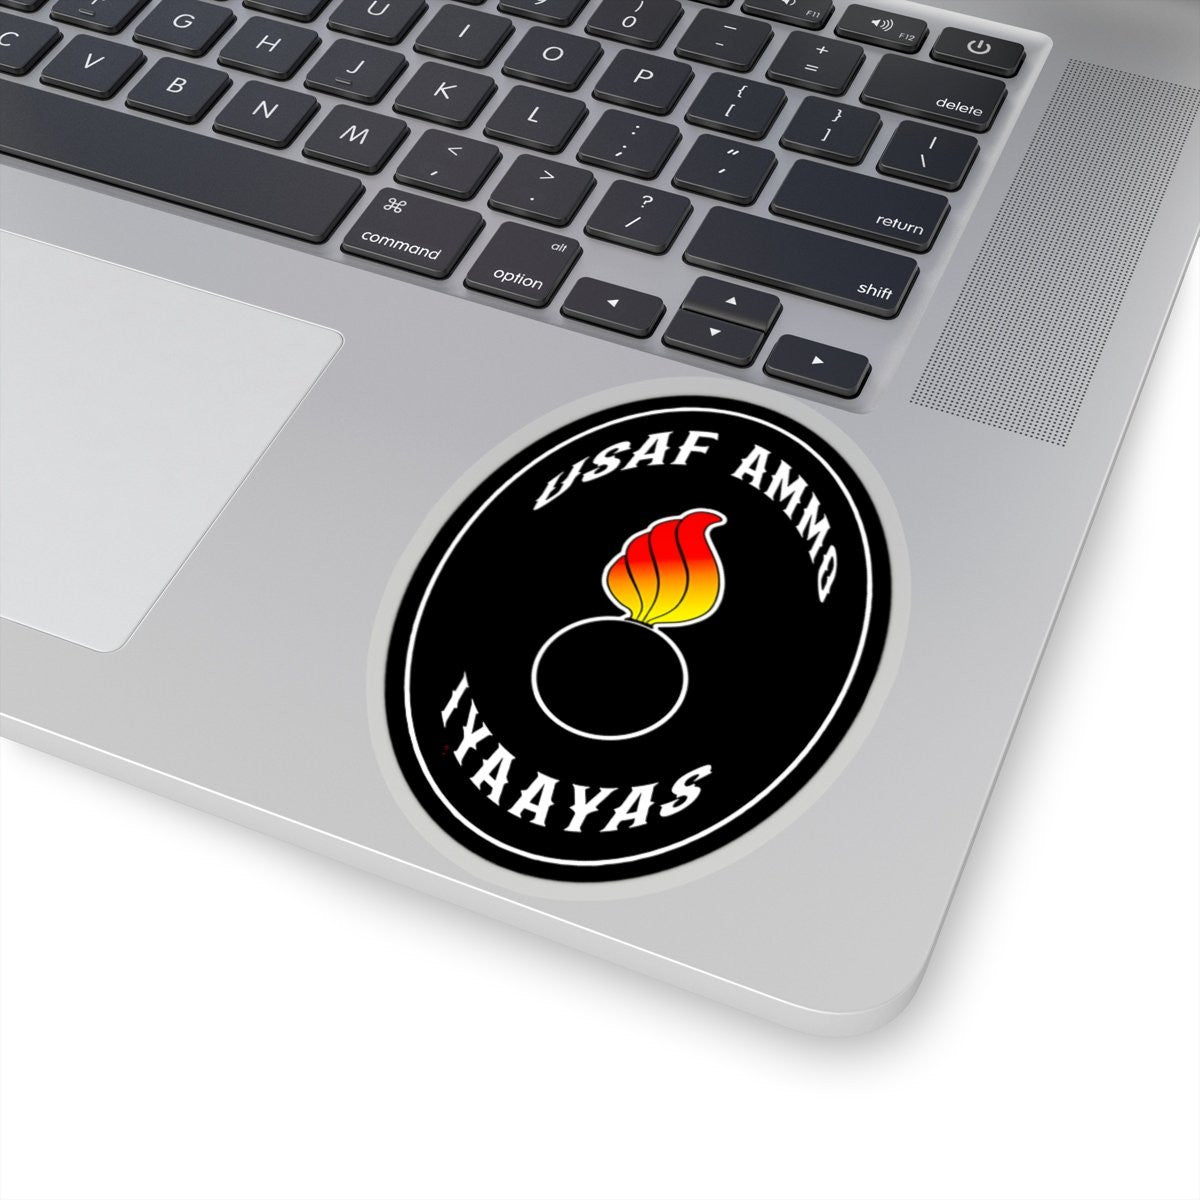 USAF AMMO Pisspot IYAAYAS Classic Oval Shaped Black Kiss-Cut Vinyl Sticker